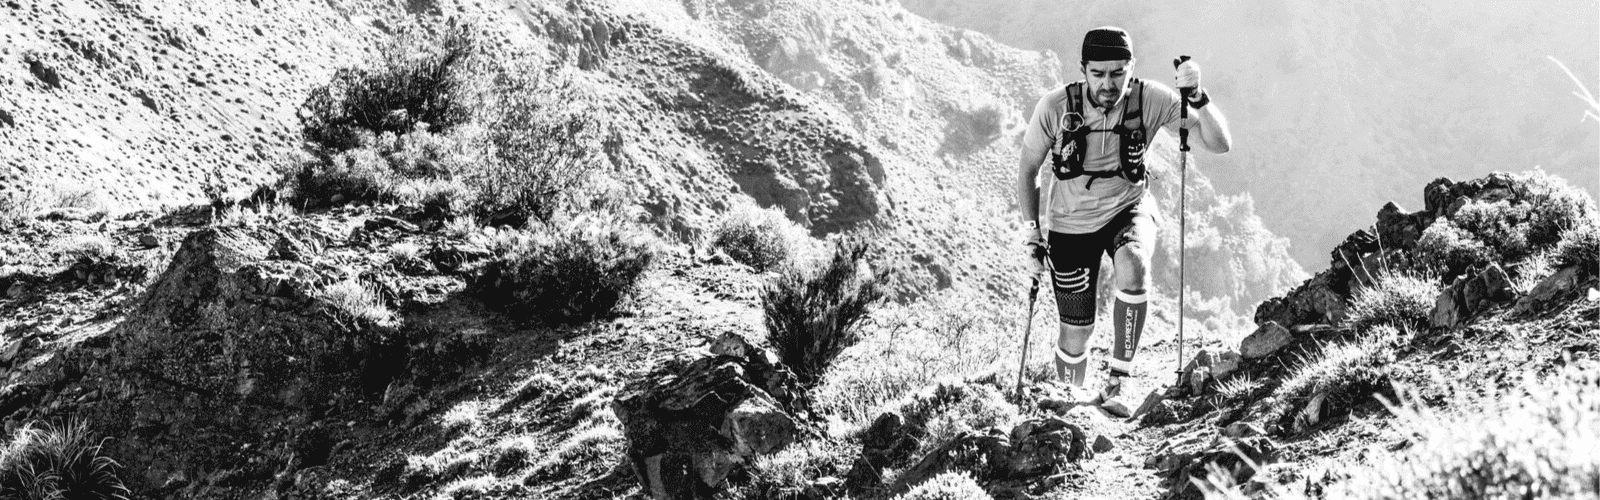 Una fotografía en blanco y negro de una persona en un sendero de montaña.